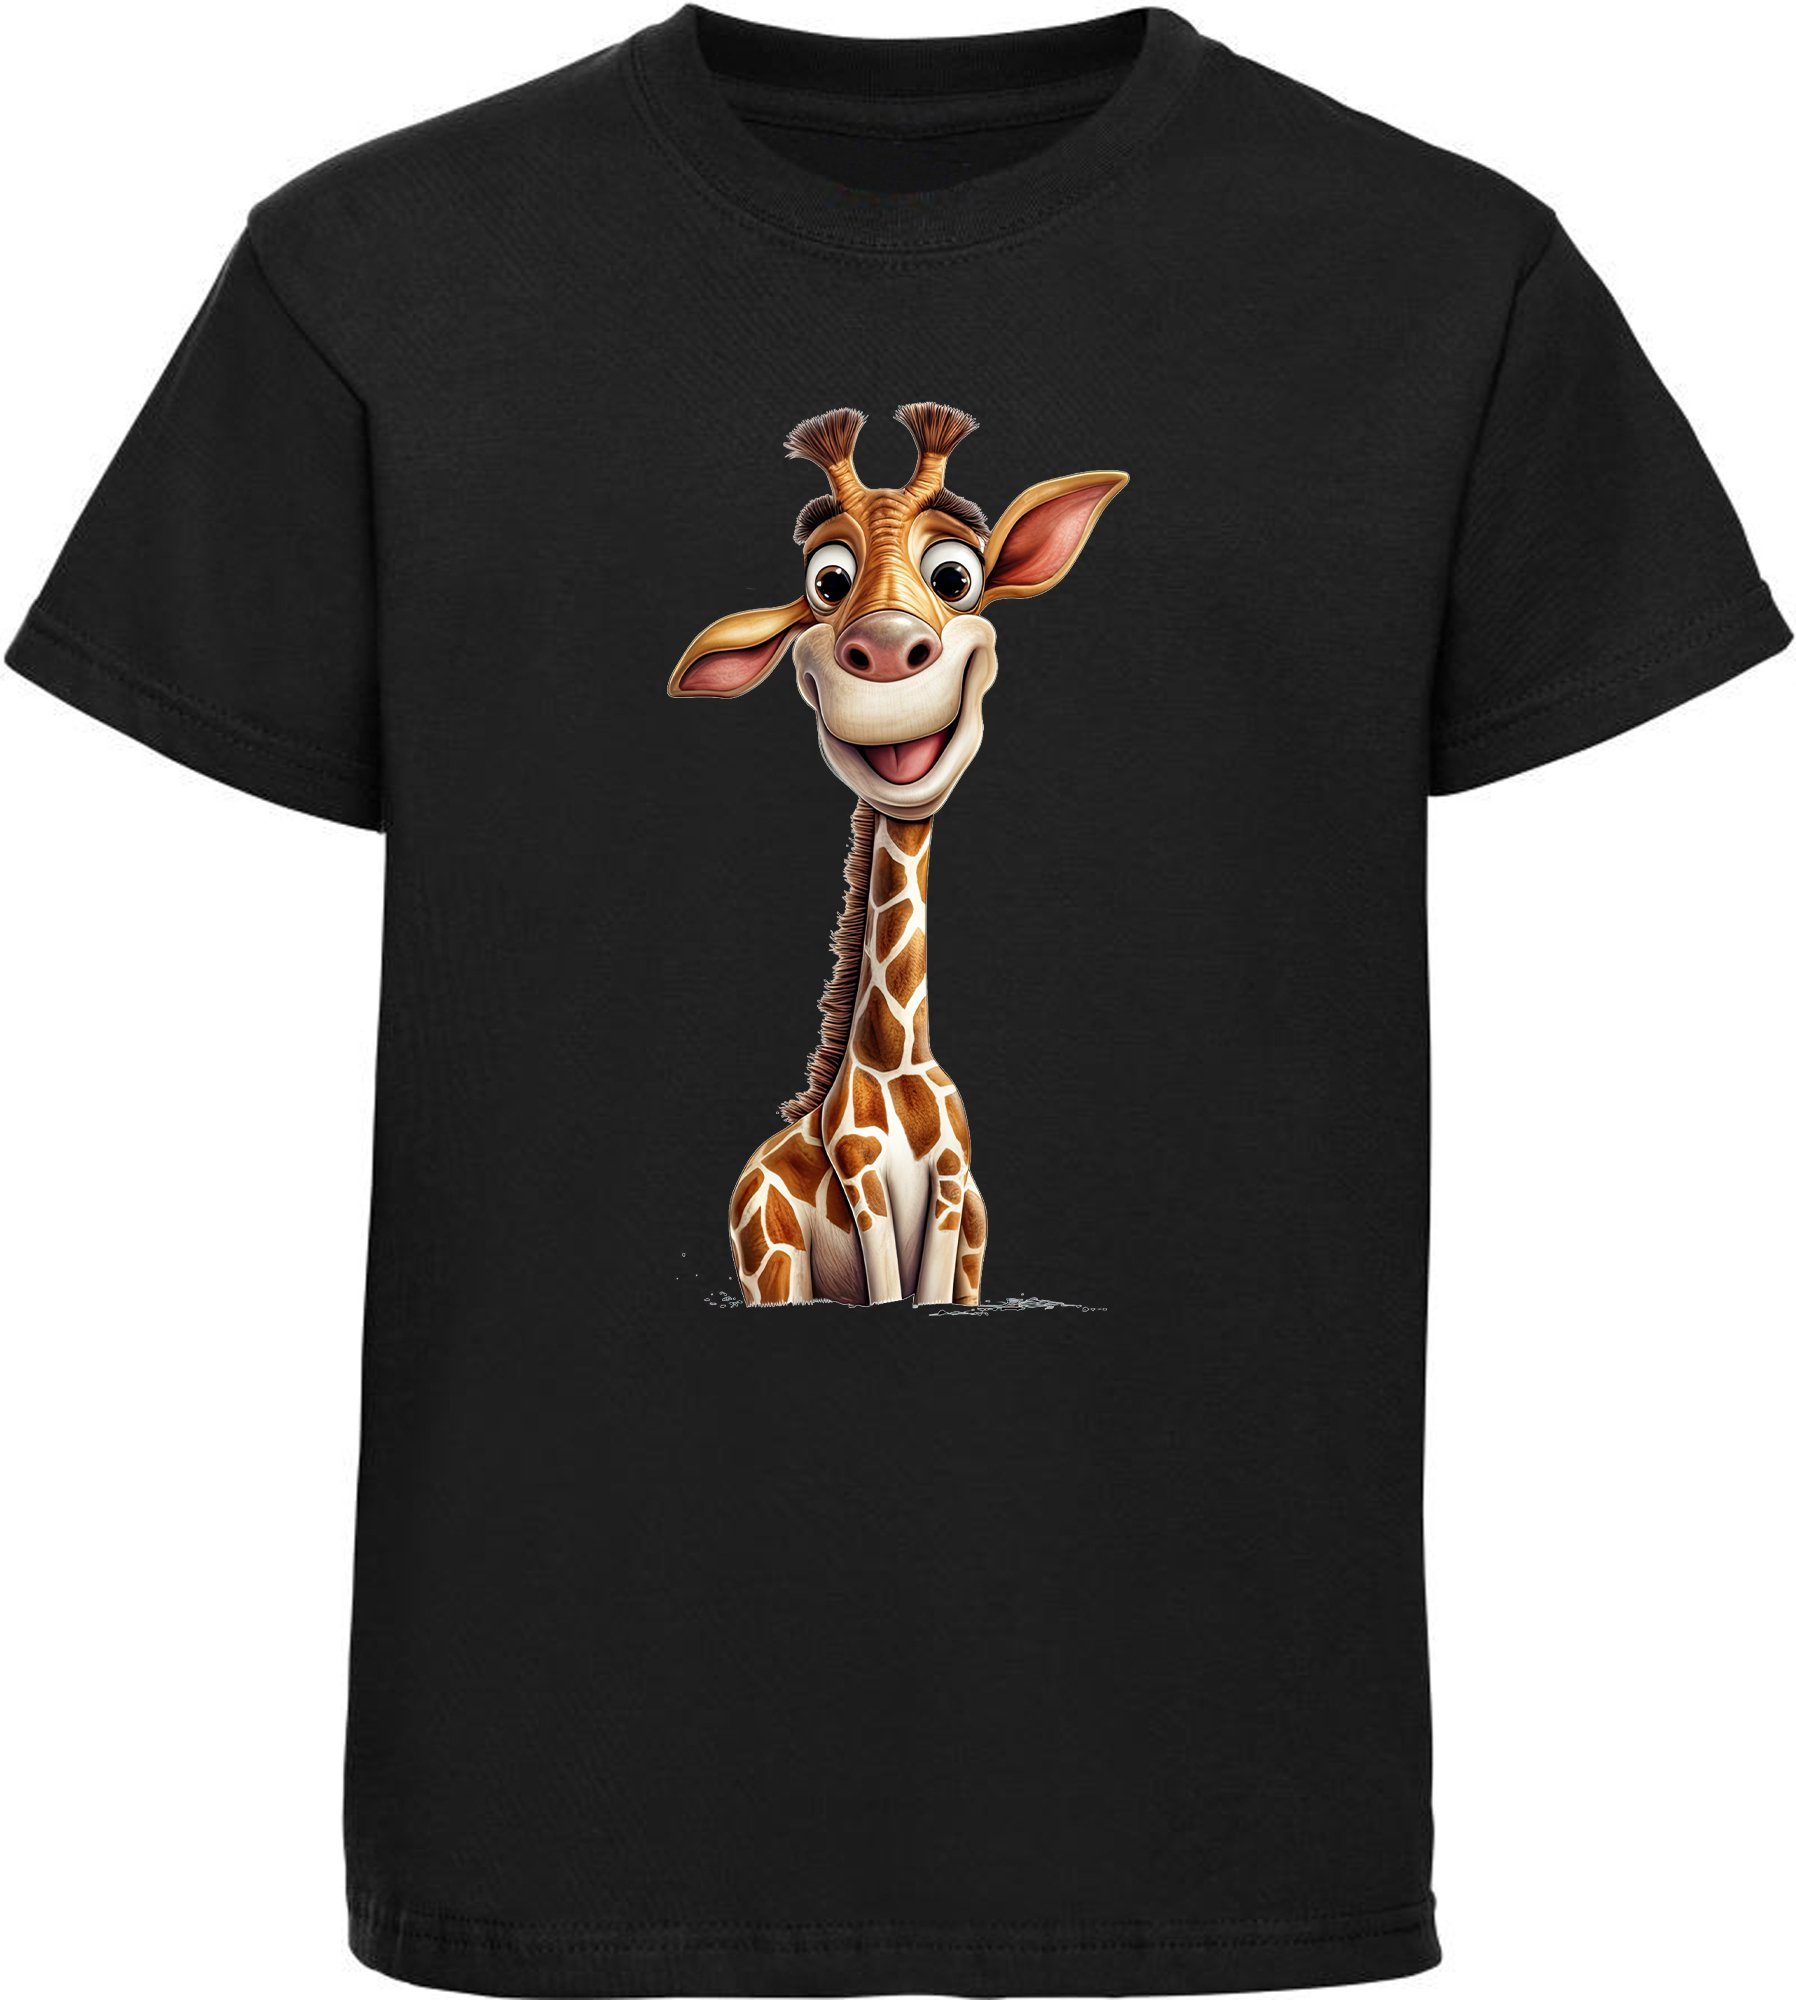 Print MyDesign24 mit Baumwollshirt Aufdruck, Baby Giraffe T-Shirt Kinder Shirt - bedruckt i273 Wildtier schwarz